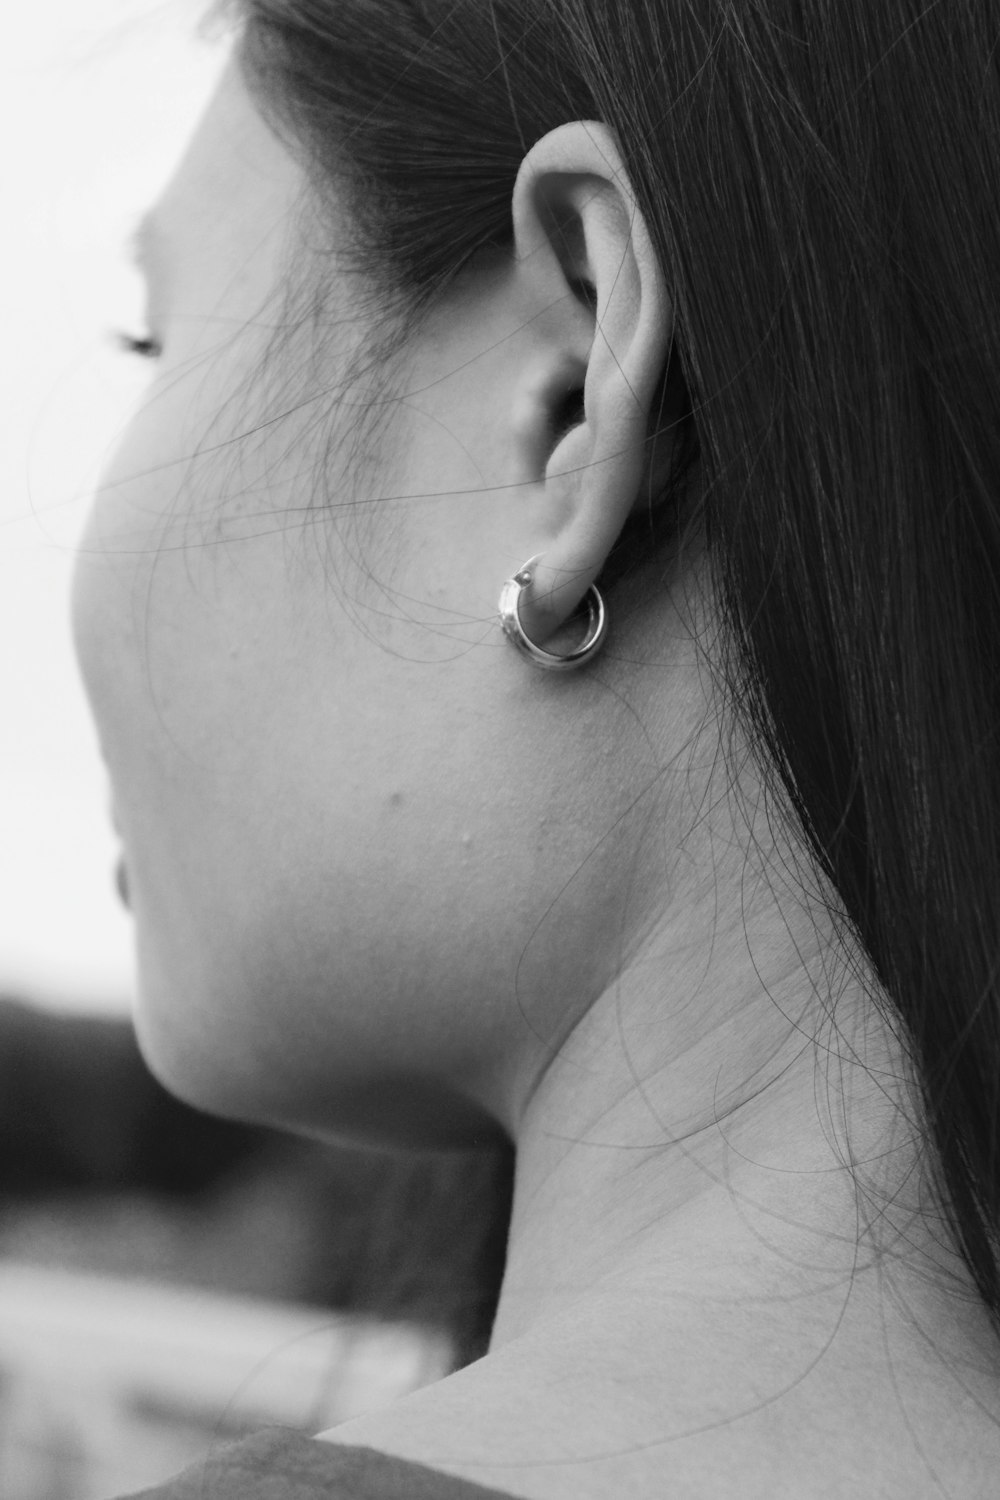 fotografia in scala di grigi di donna che indossa orecchino a cerchio